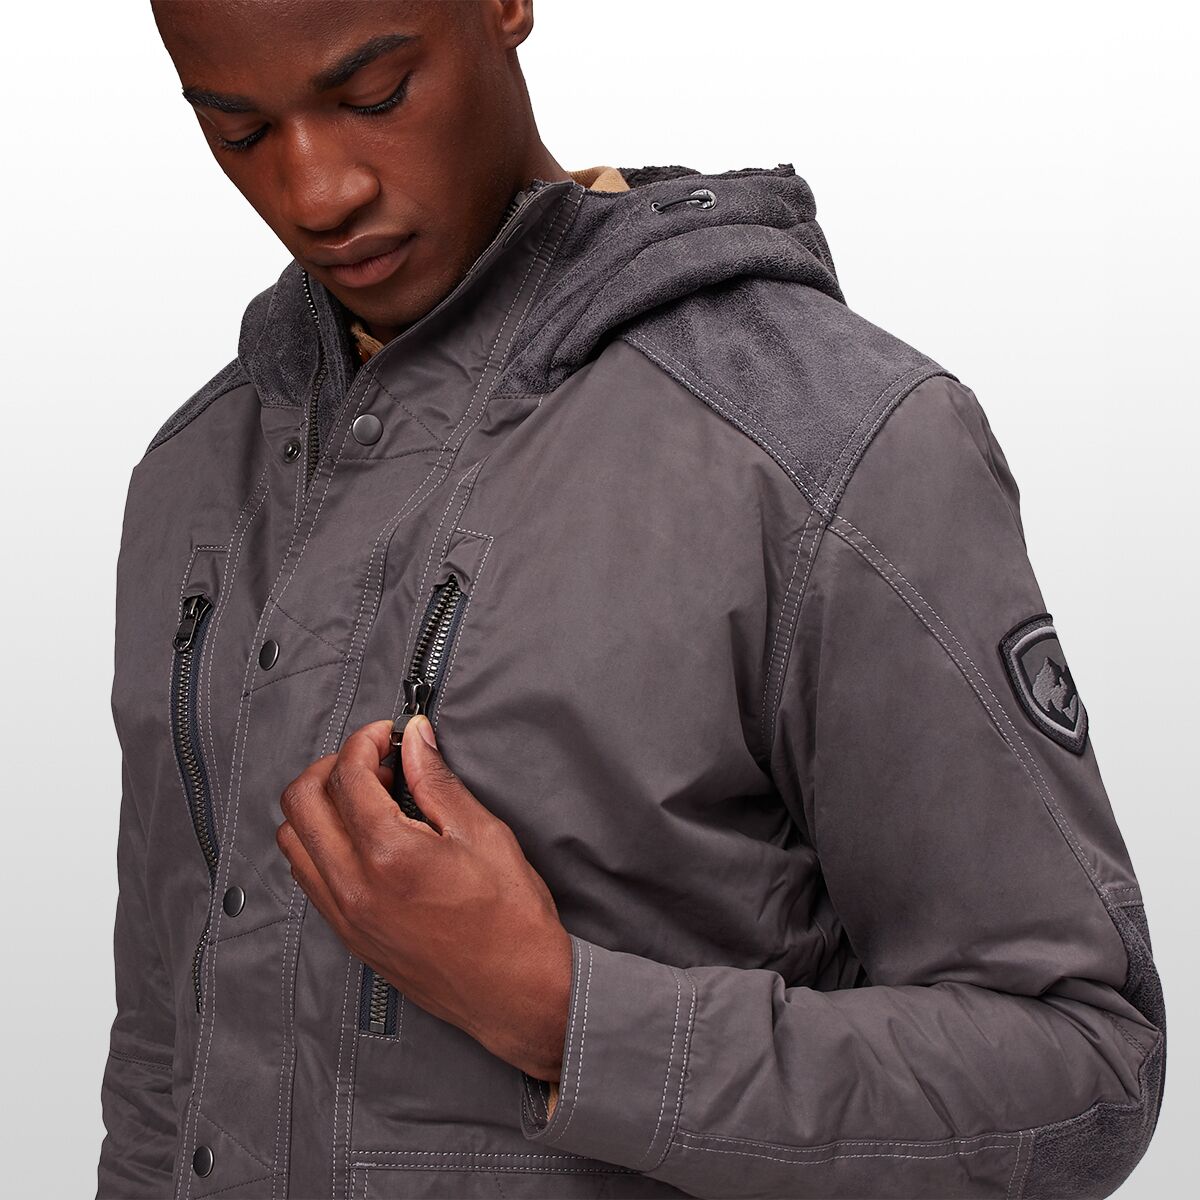 Kuhl, Jackets & Coats, Kuhl Ascendyr Performance Luxury Jacketnew With  Tags Size Large Dark Greyblack